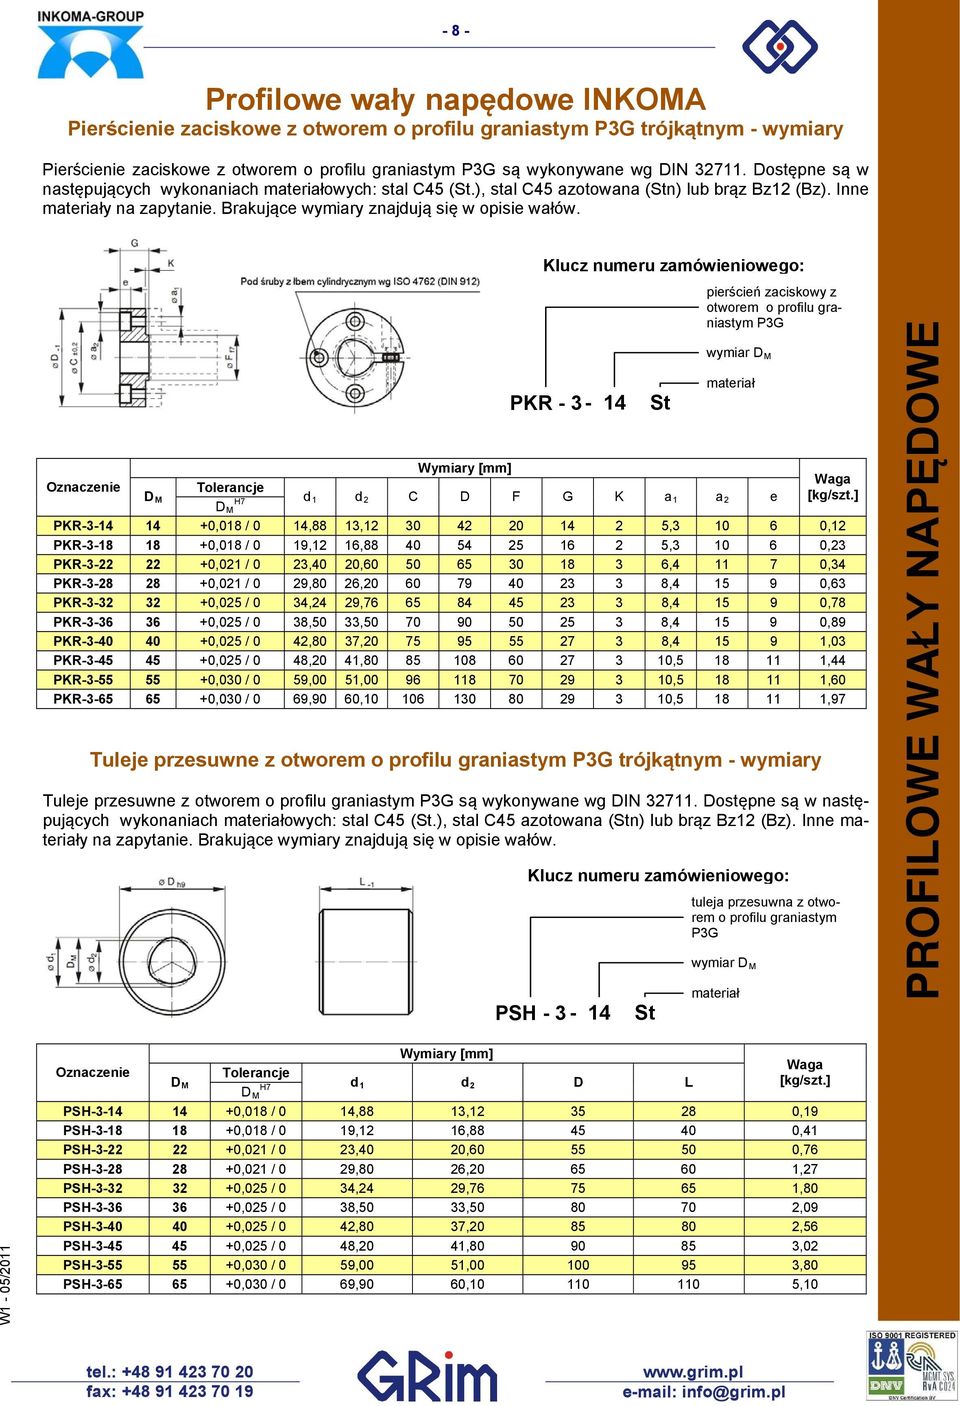 PKR - 3-14 S PSH - 3-14 S ierścień zaciskowy z oworem o rofilu graniasym P3G wymiar H7 d 1 d C D F G K a 1 a e uleja rzesuwna z oworem o rofilu graniasym P3G wymiar D [kg/sz.